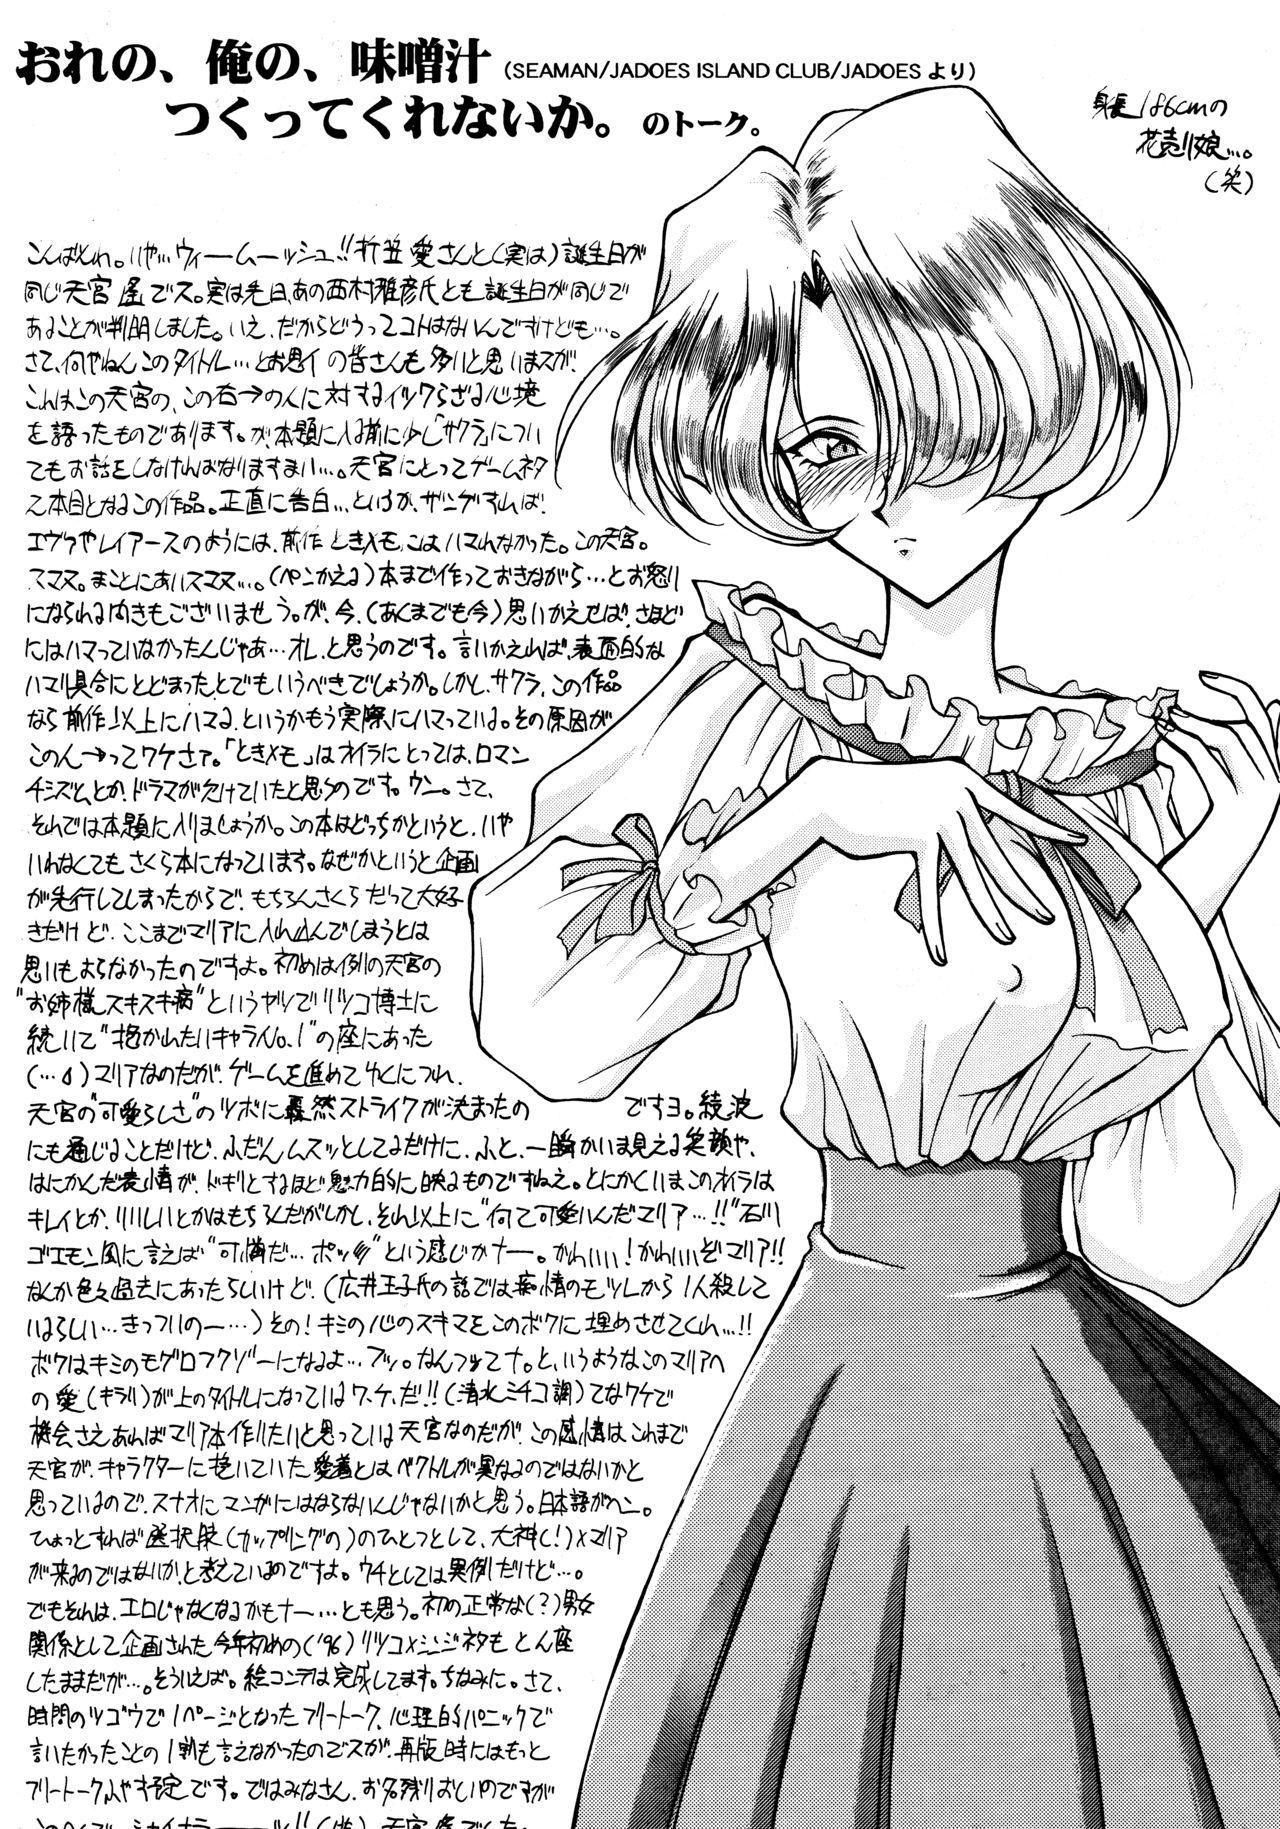 Ffm Physical Love #2 - Sakura taisen Fucking - Page 3